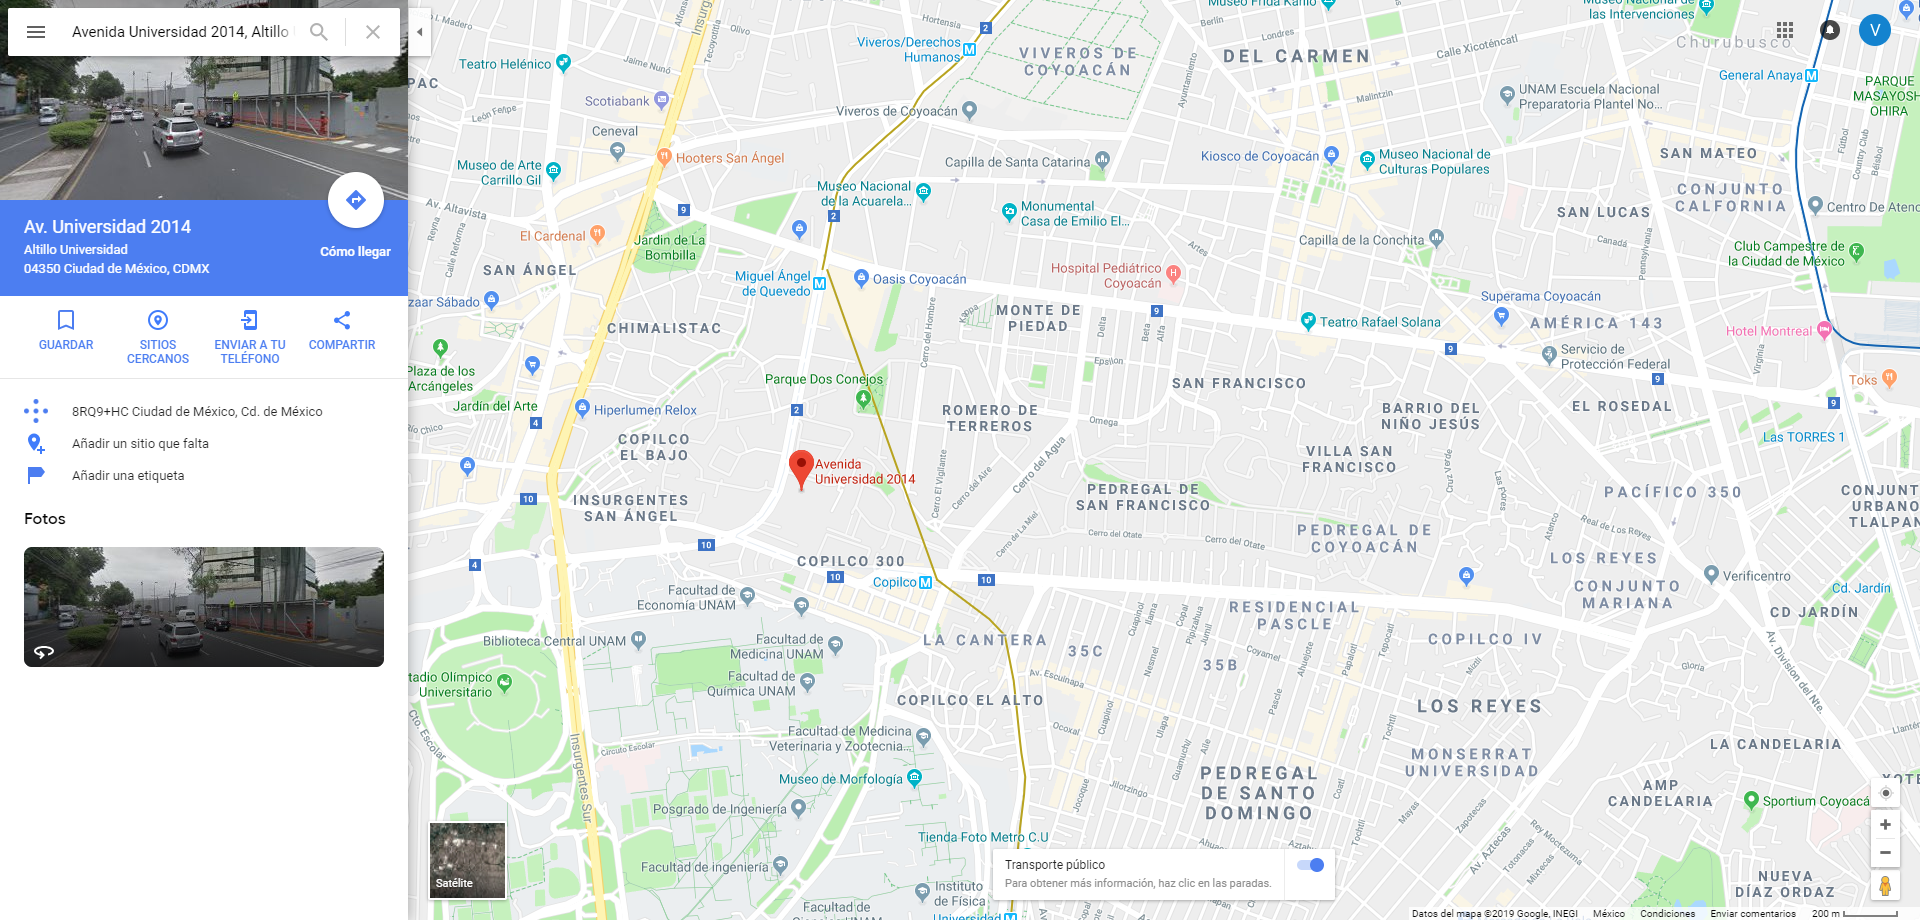 Cómo ver el mapa del metro en Google Maps? | DineroenImagen